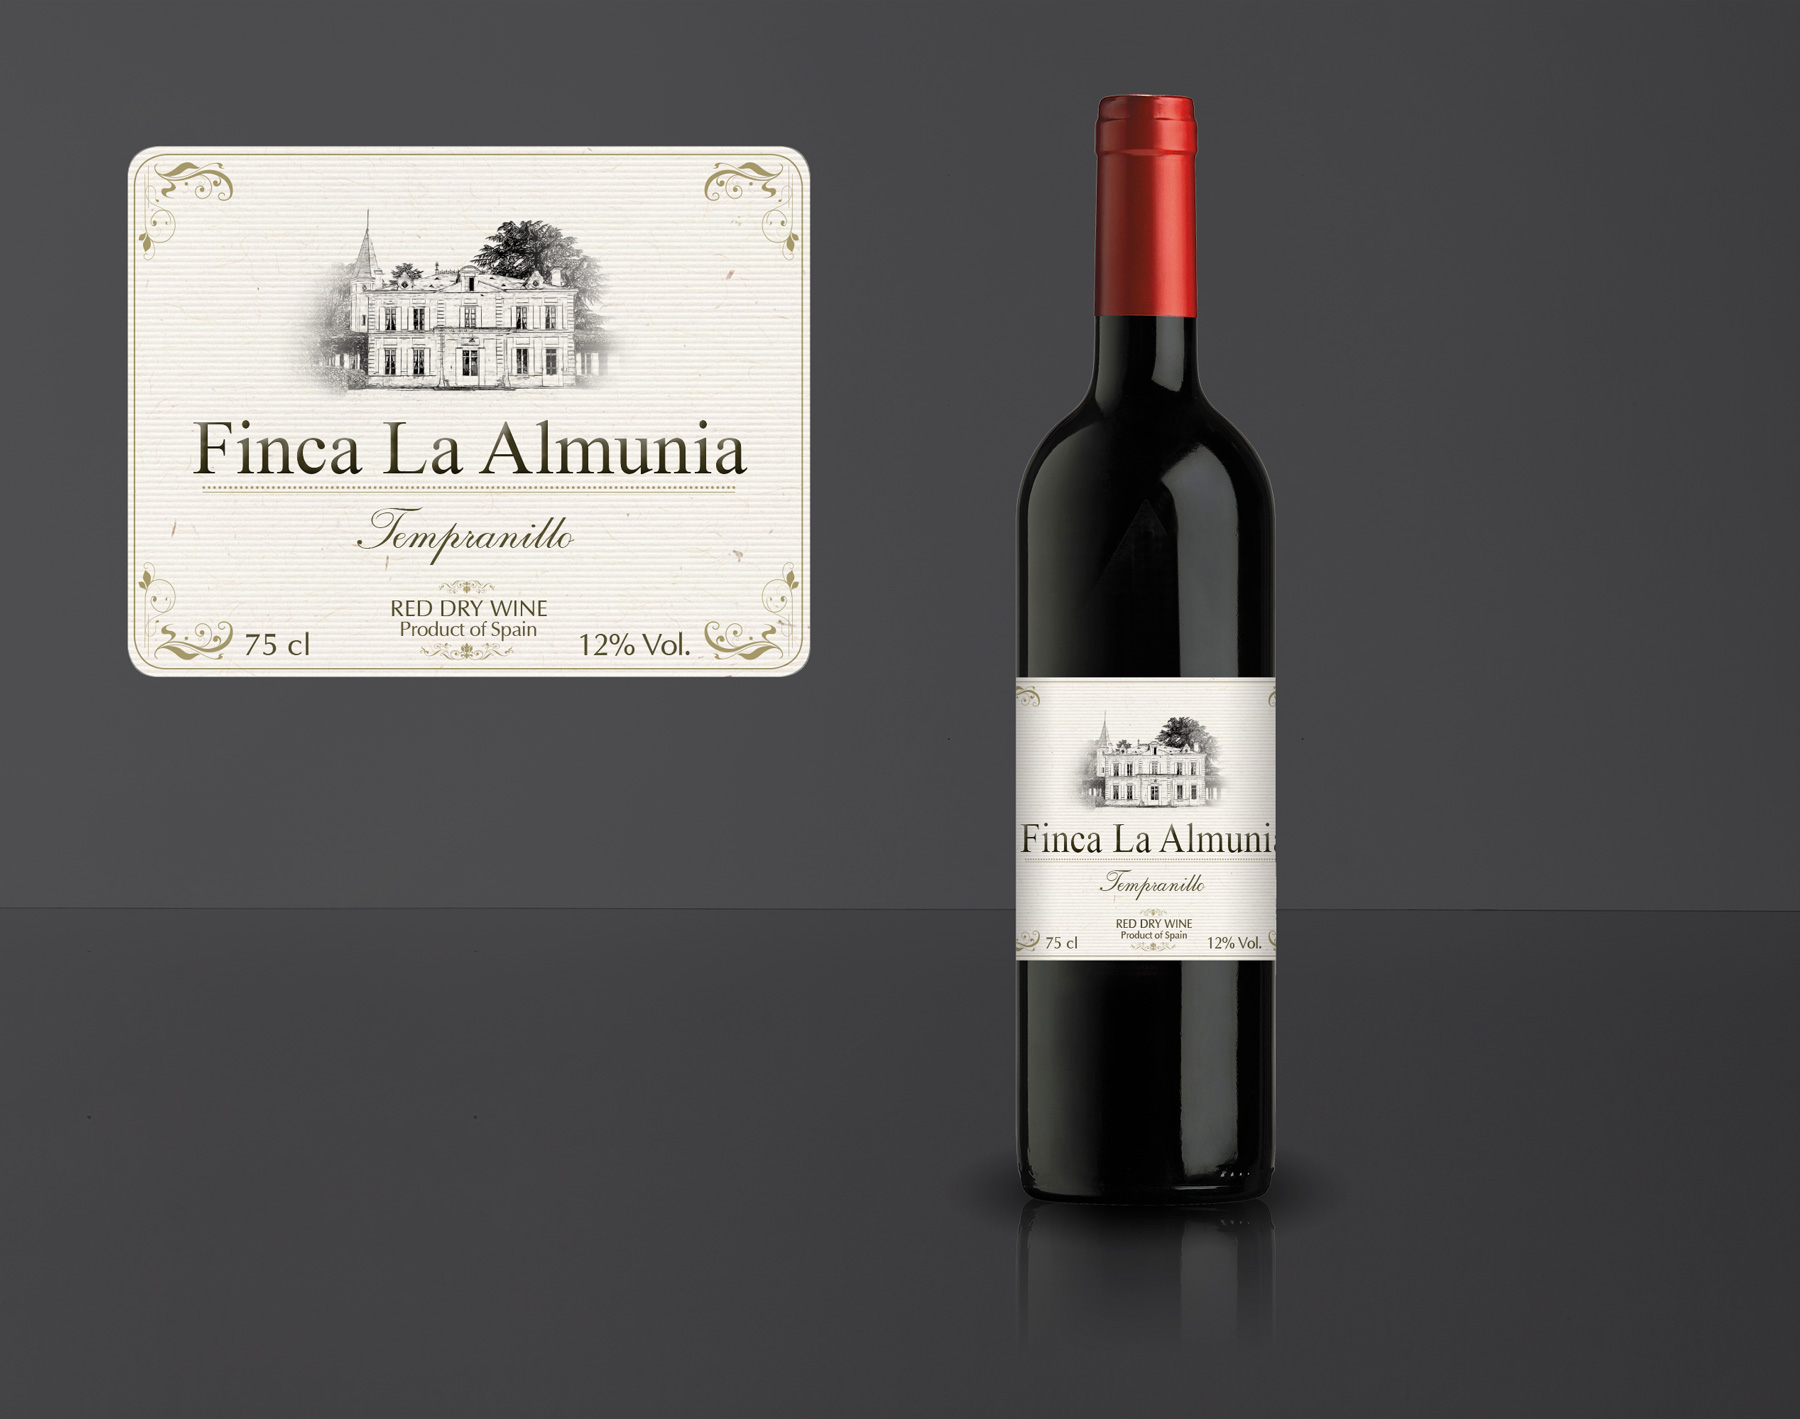 Diseño gráfico y creativo de etiquetas y packaging de vino para LA ALMUNIA